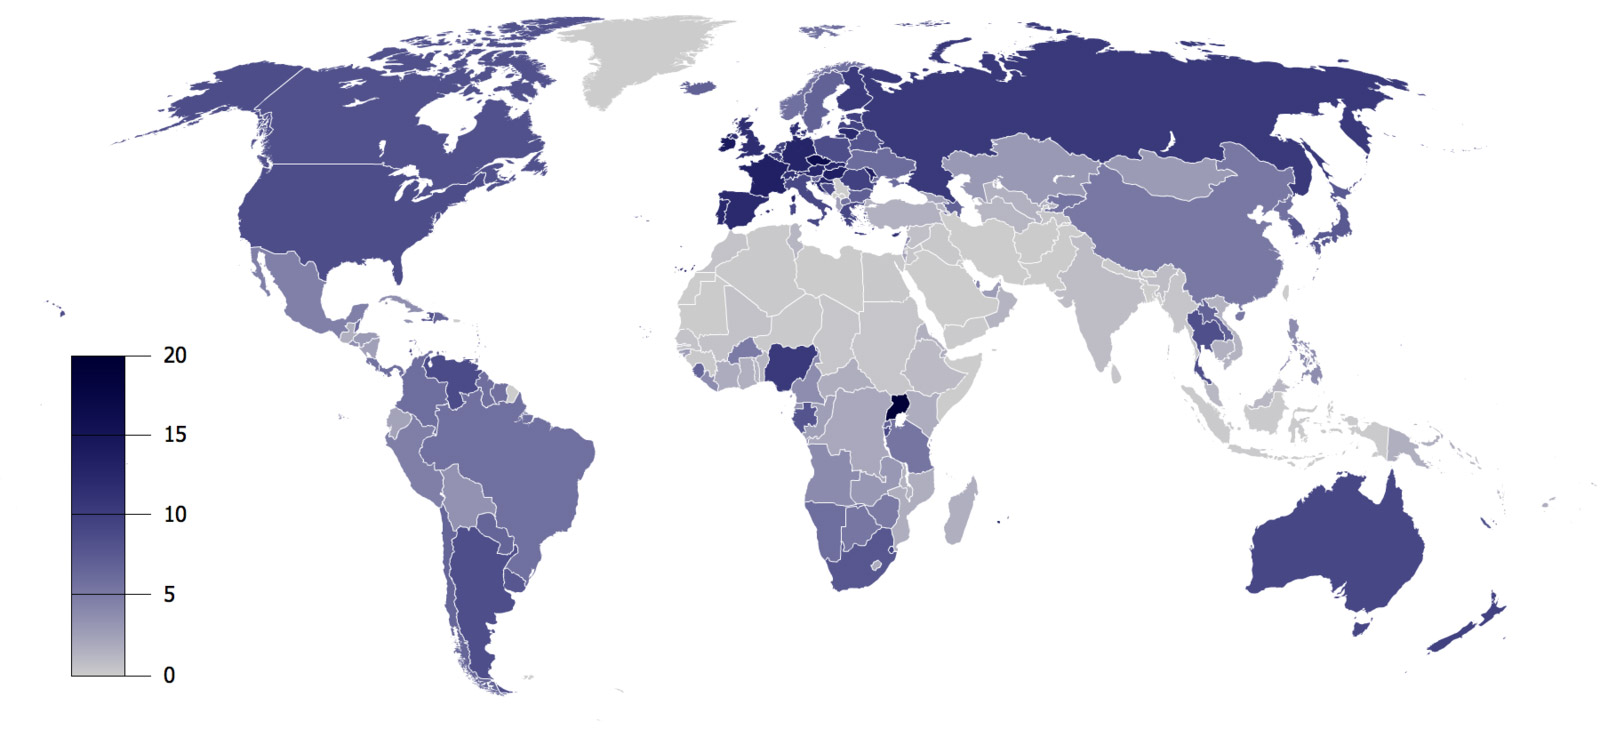 En fazla alkol tüketen ülkeler